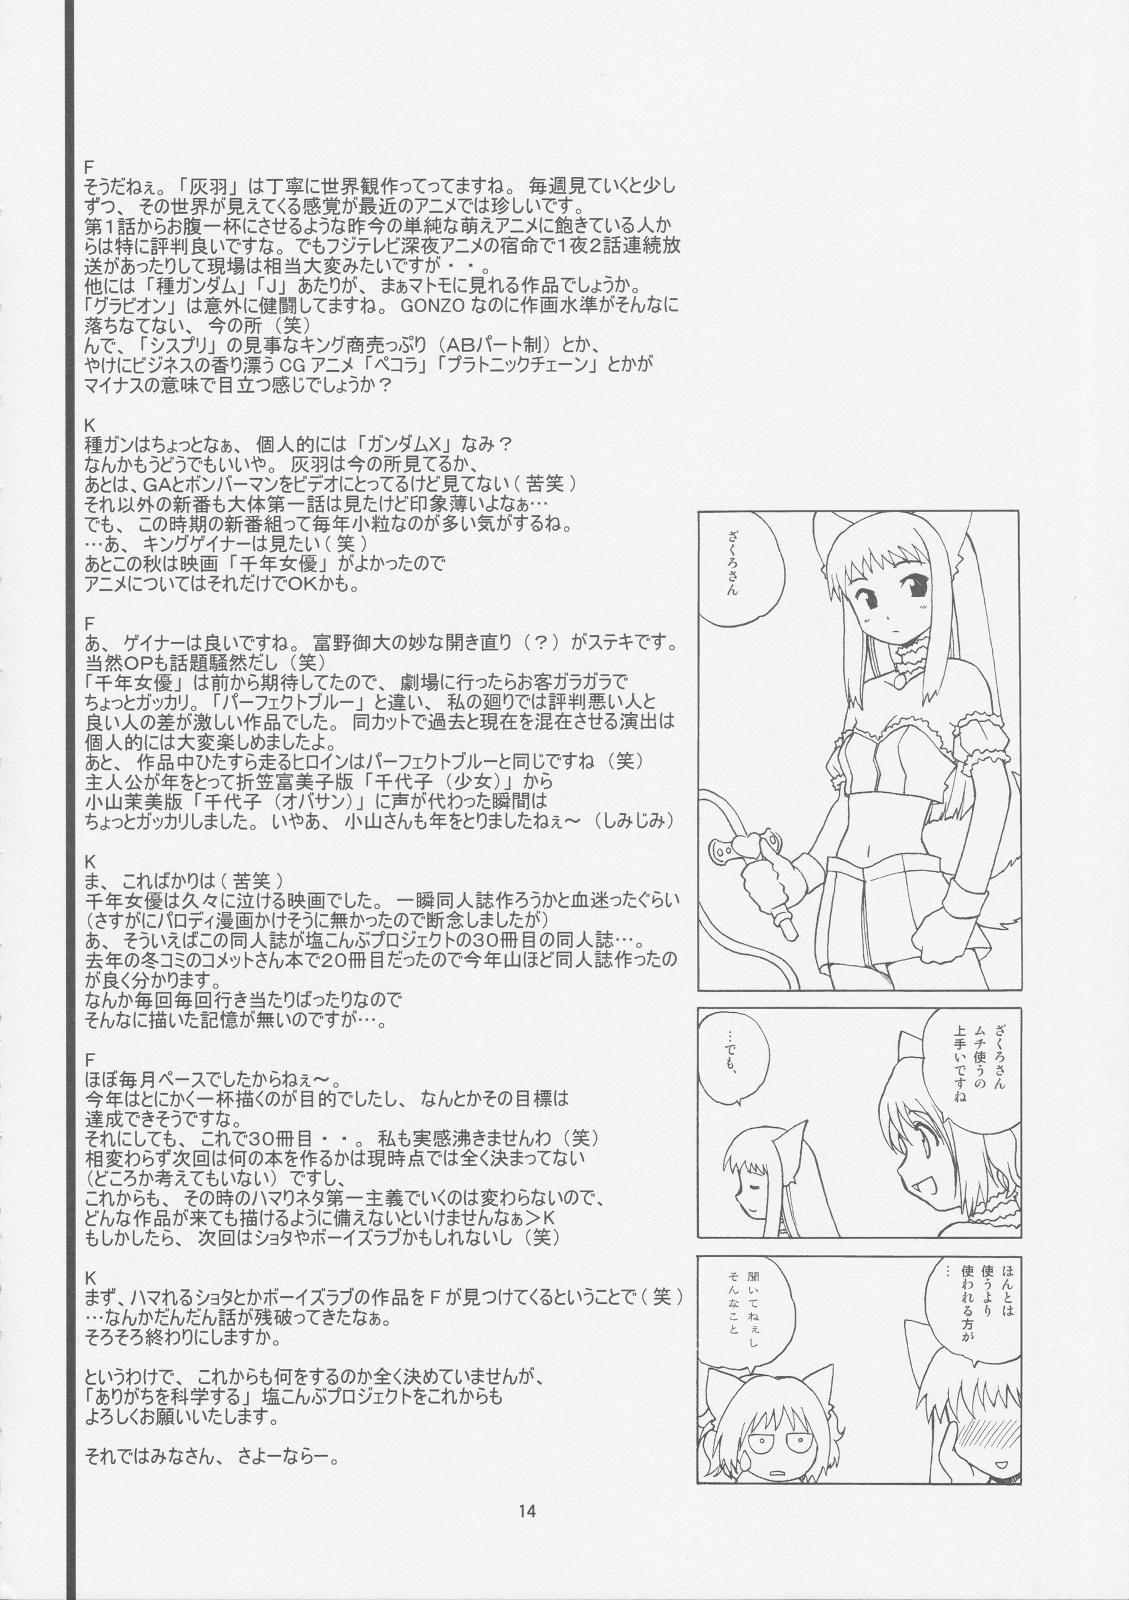 Pervs Milk Tappuri Ichigo ni Kiss 2 - Tokyo mew mew Gay Friend - Page 13